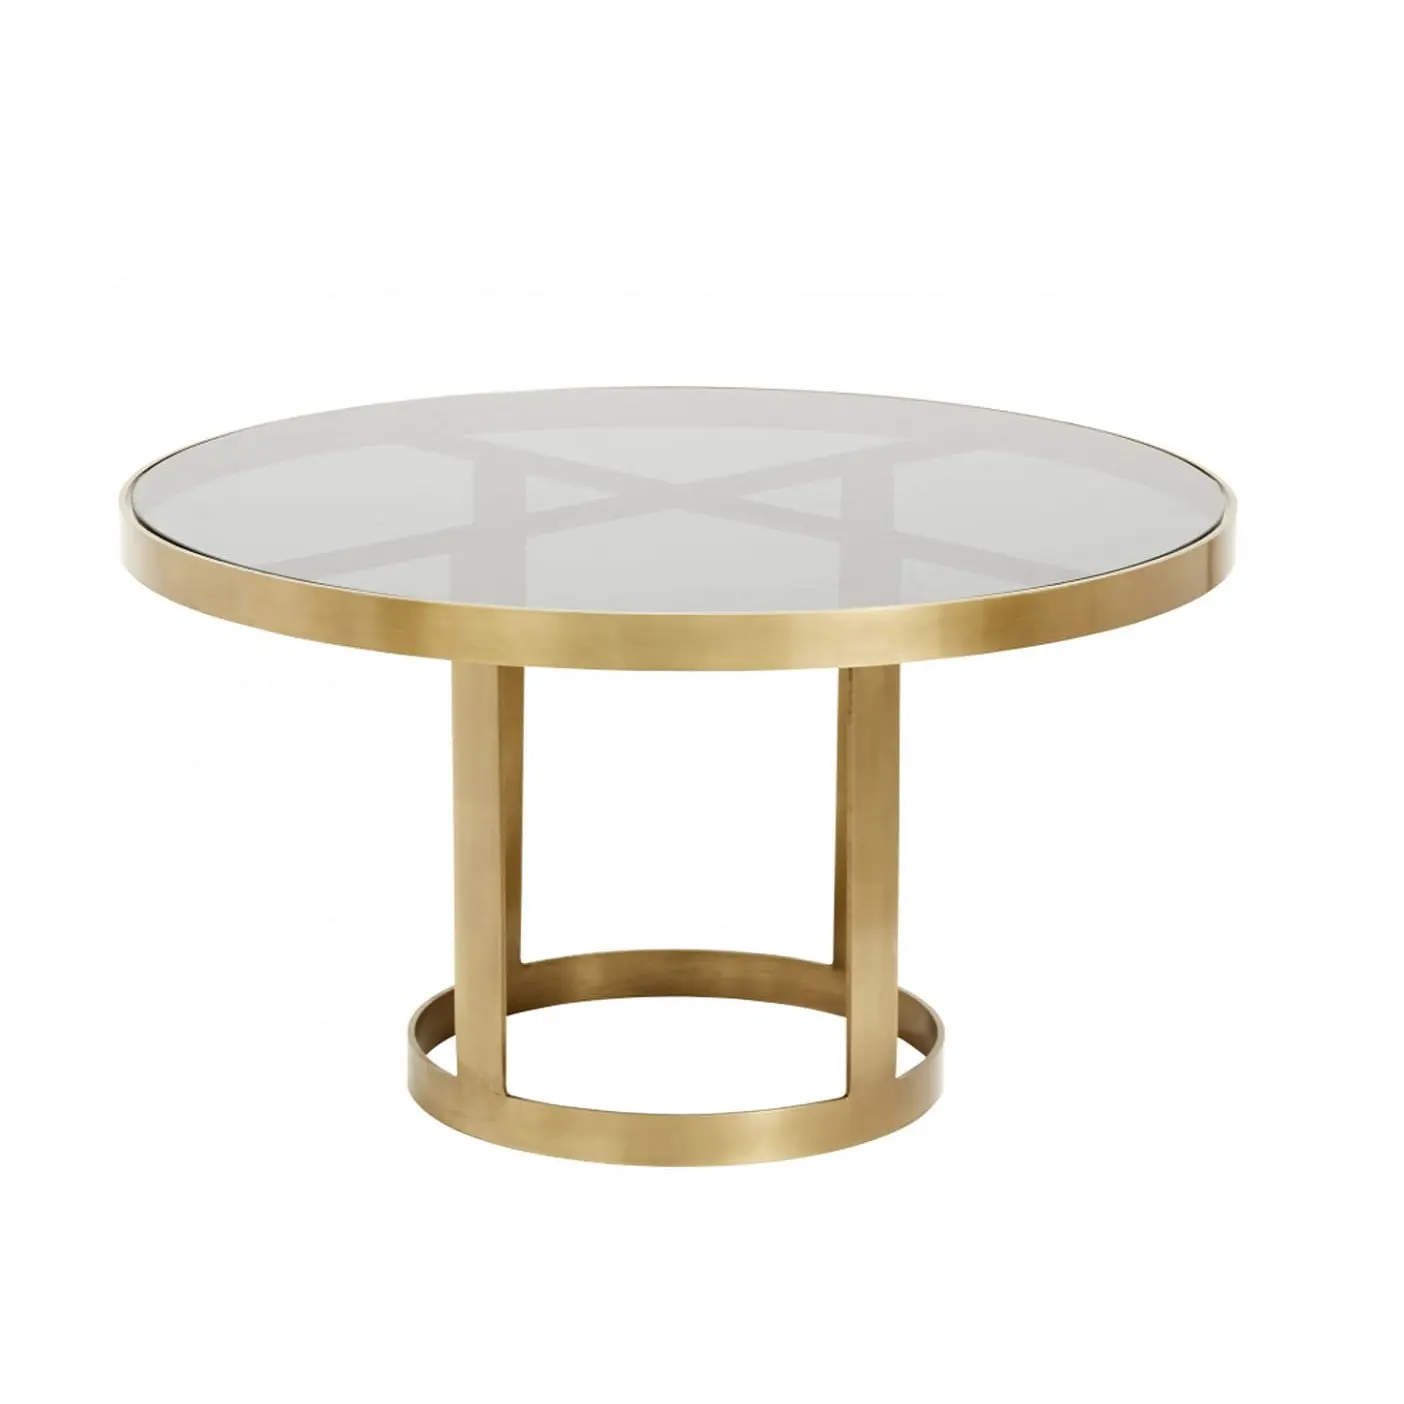 מראה אלגנטי שיש למעלה קטן קפה שולחן עם זהב ברזל רגליים מפואר סלון צד שולחן מחיר סביר